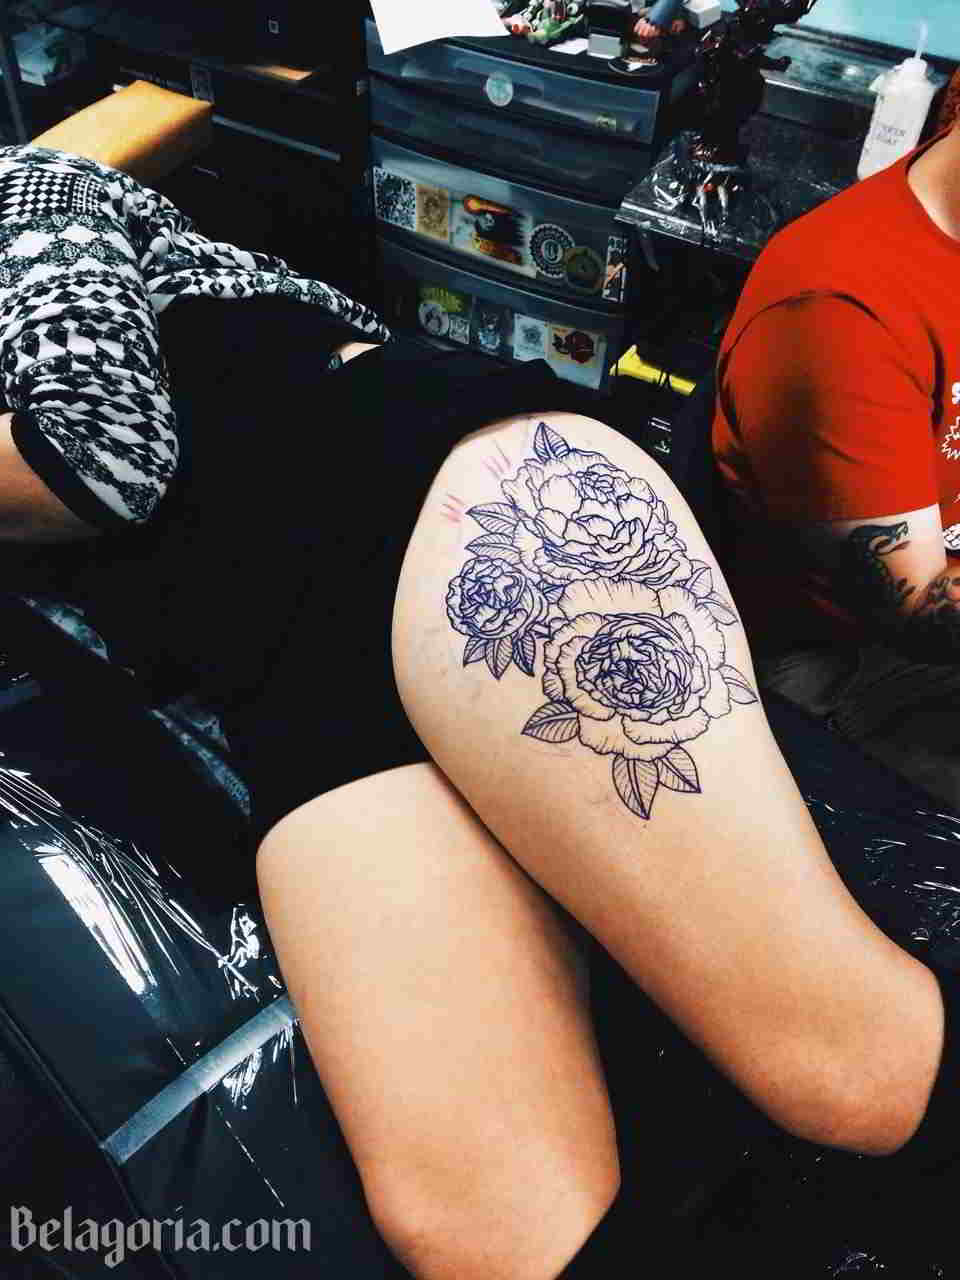 Foto de una mujer con un tatuaje de clavel